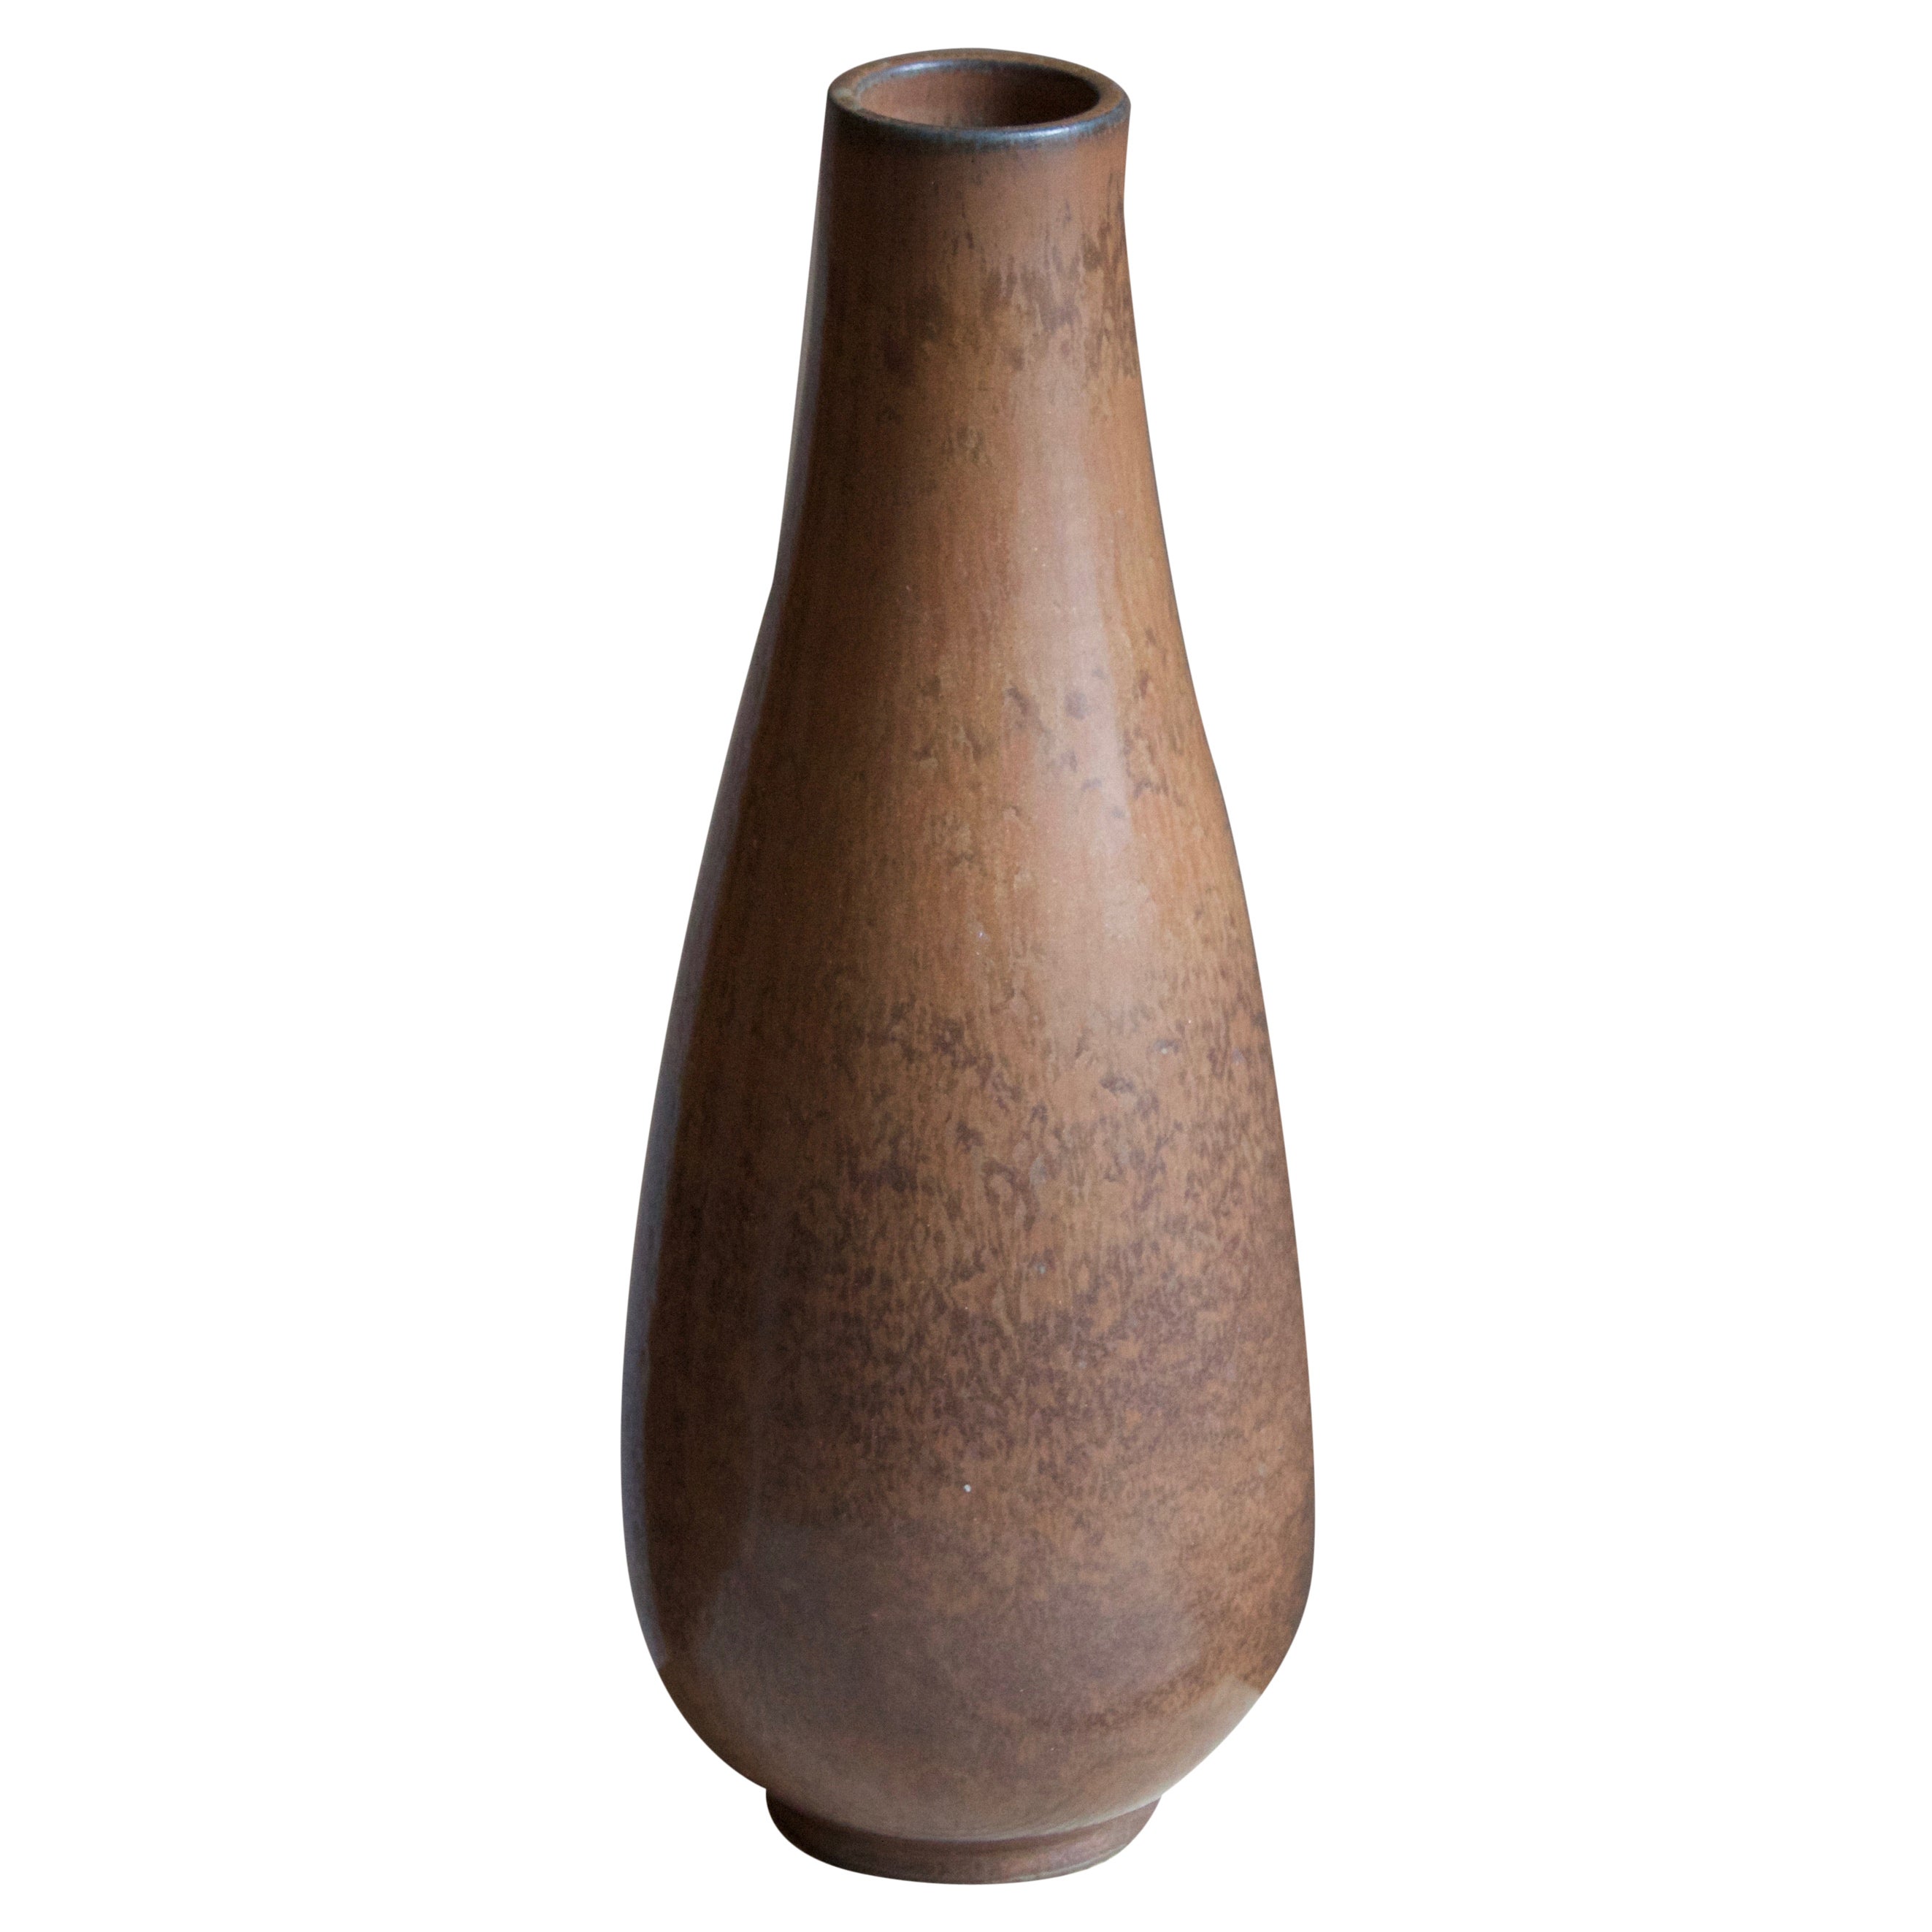 Gunnar Nylund, Vase, Brown Glazed Stoneware, Rörstand, Sweden, 1950s